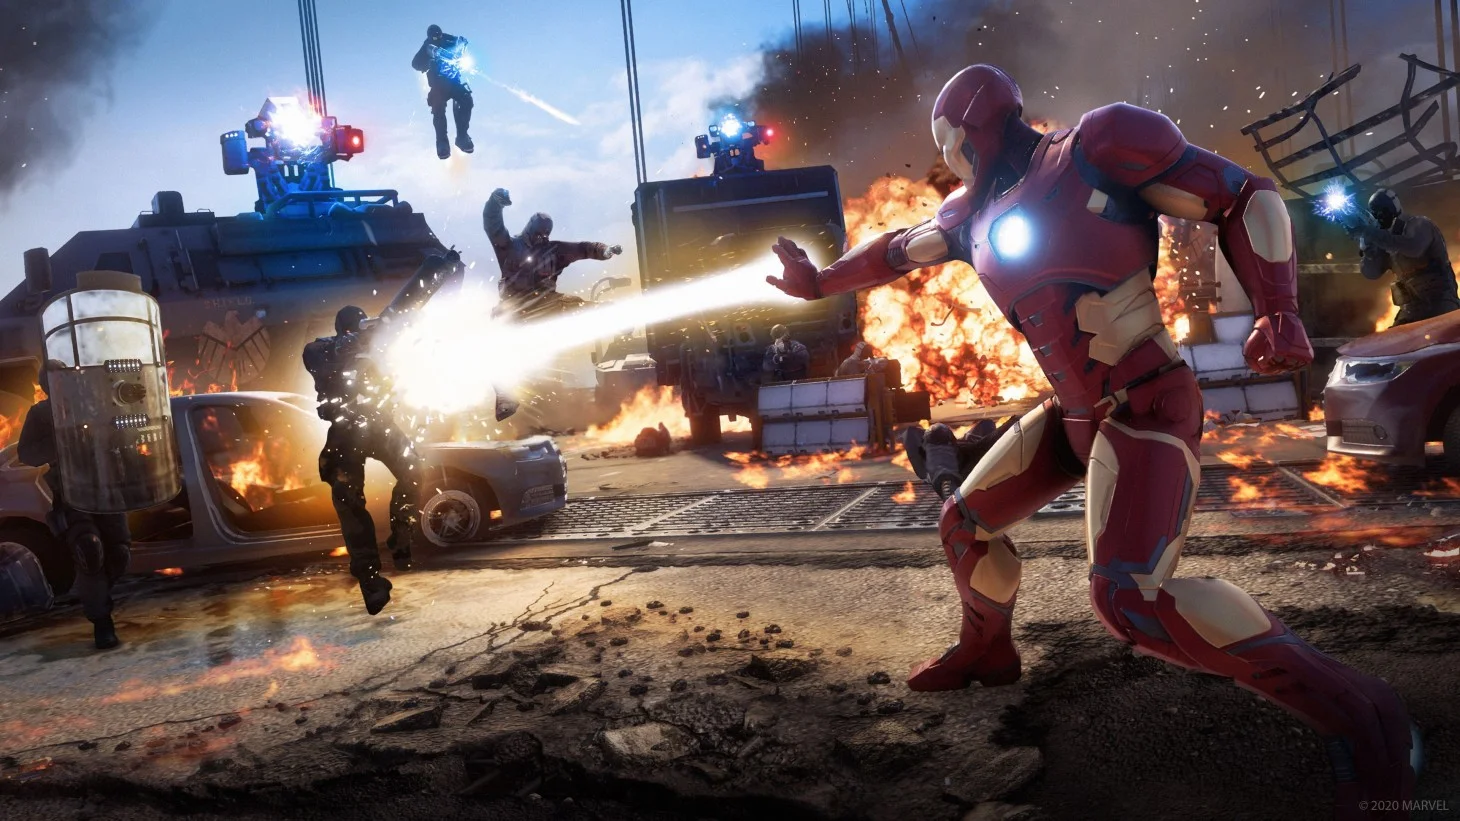 Marvel's Avengers Announcing End of Development